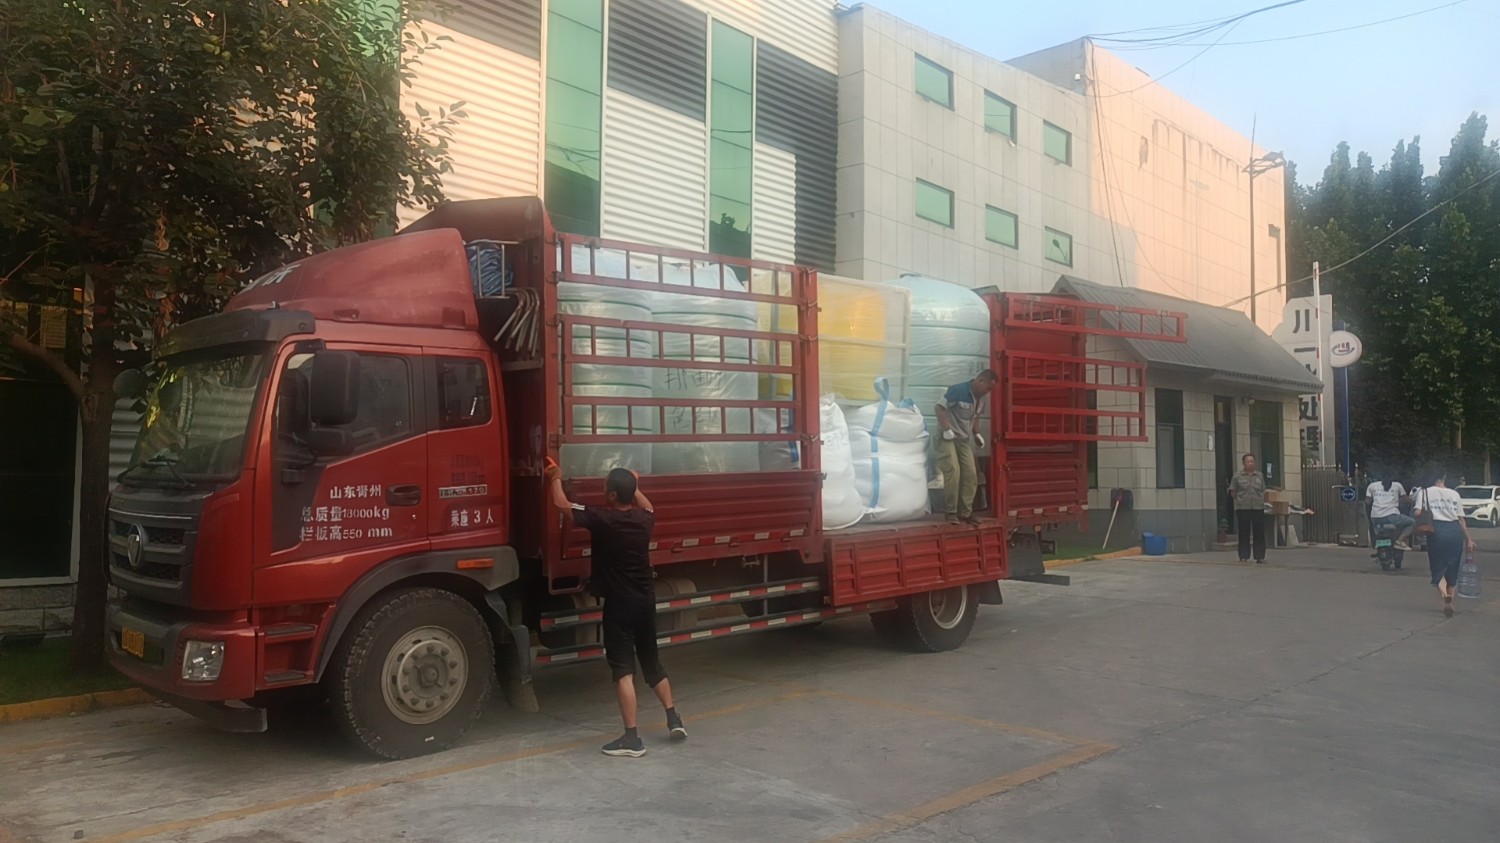 【川一股份】水处理设备3套装车发往西藏